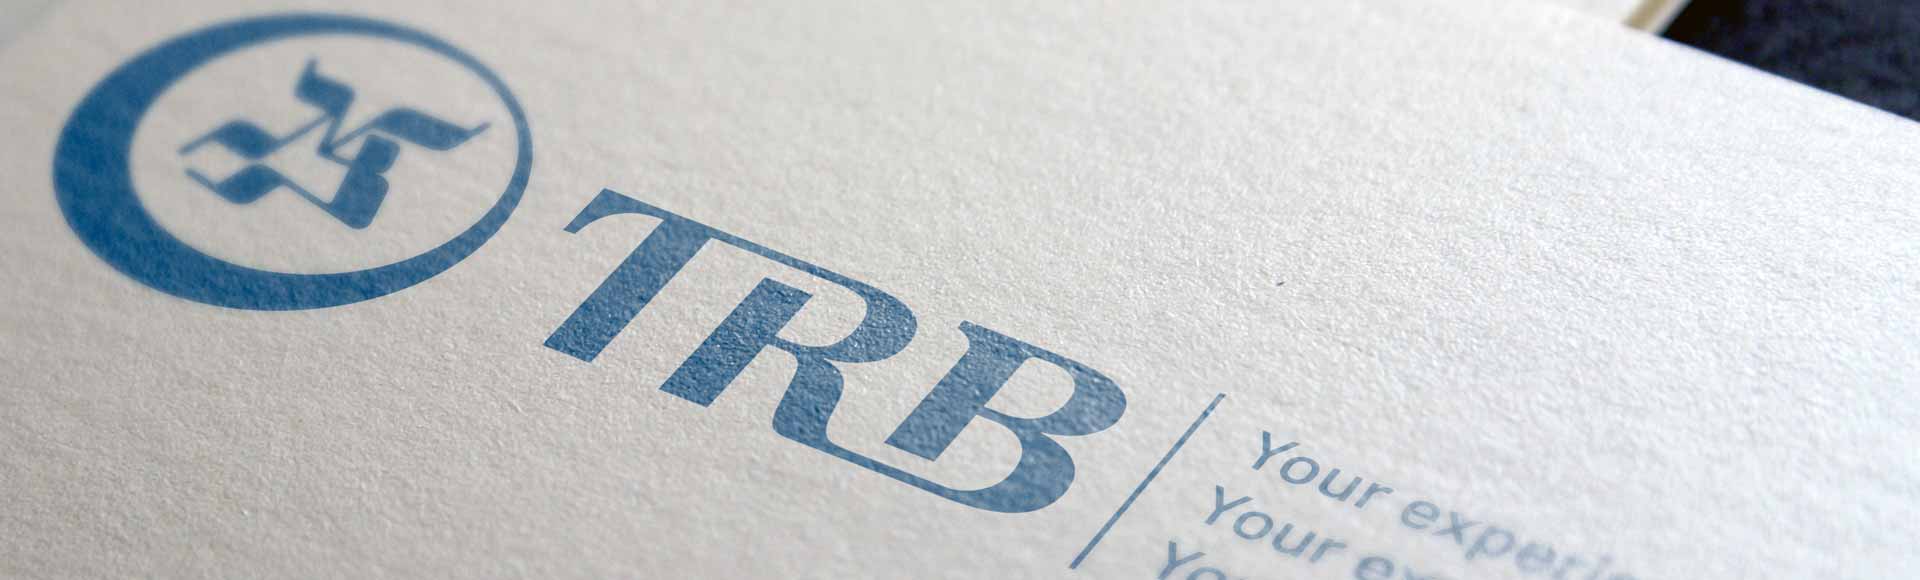 TRB-neue-logo-header-banner-1920x580